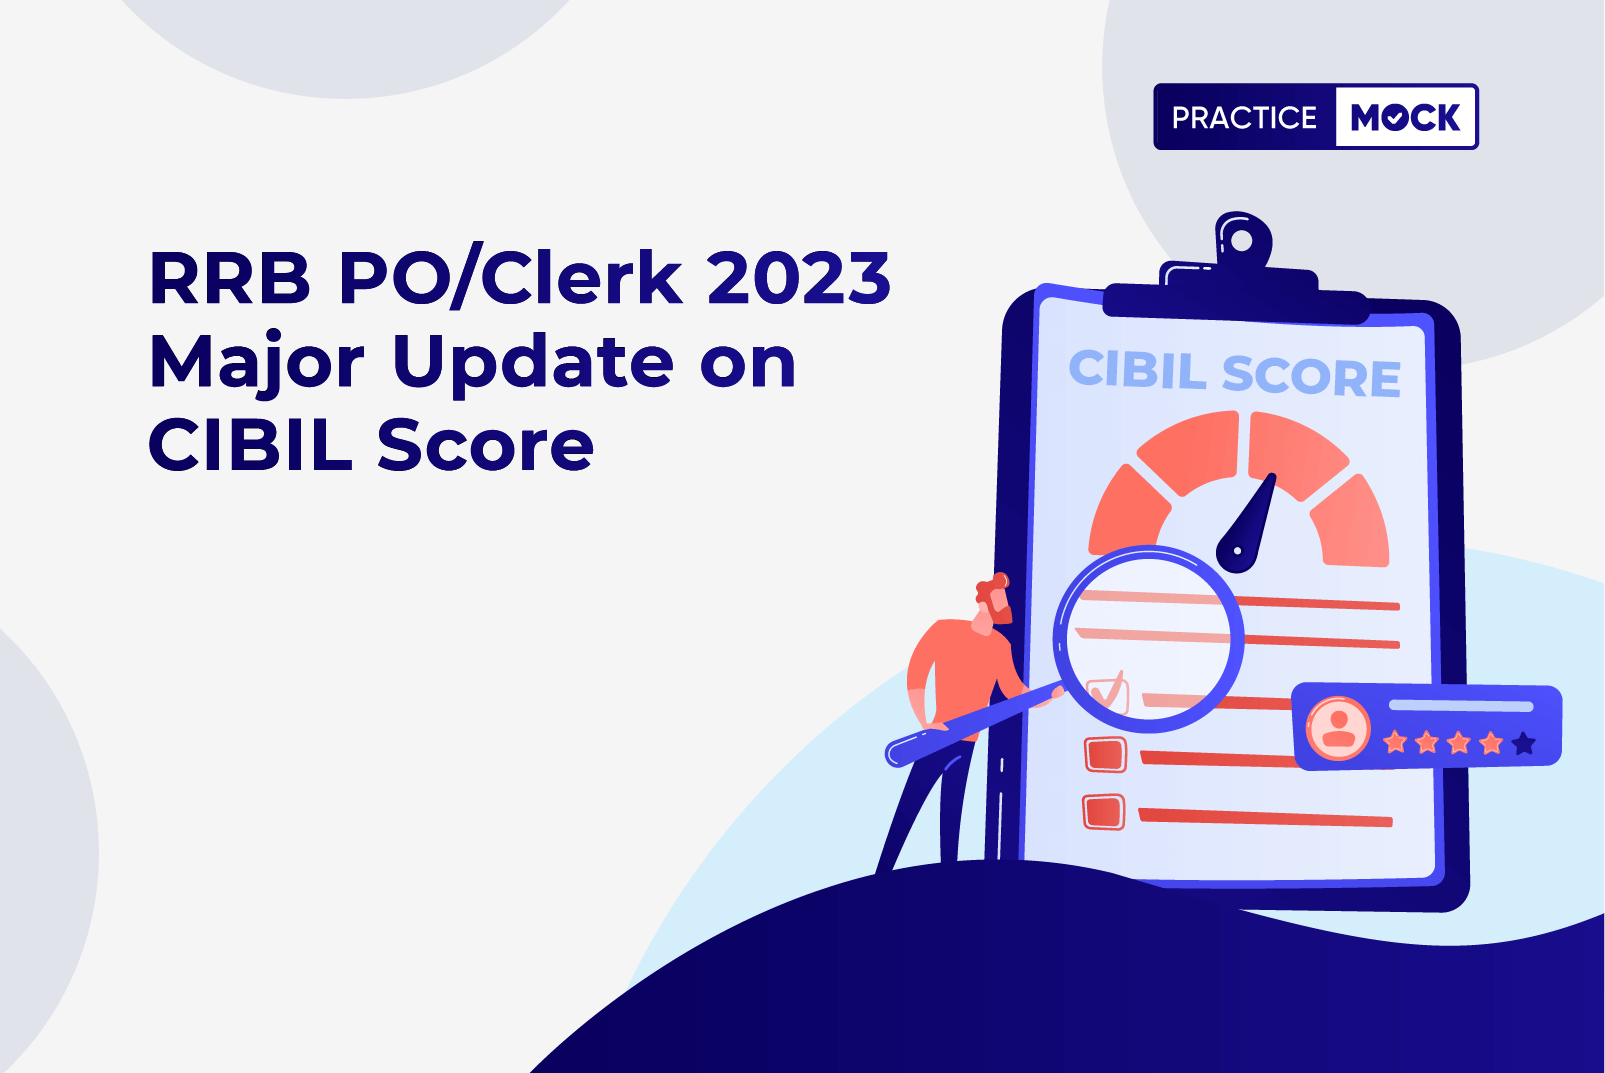 RRB-POClerk-2023-Major-Update-on-CIBIL-Score